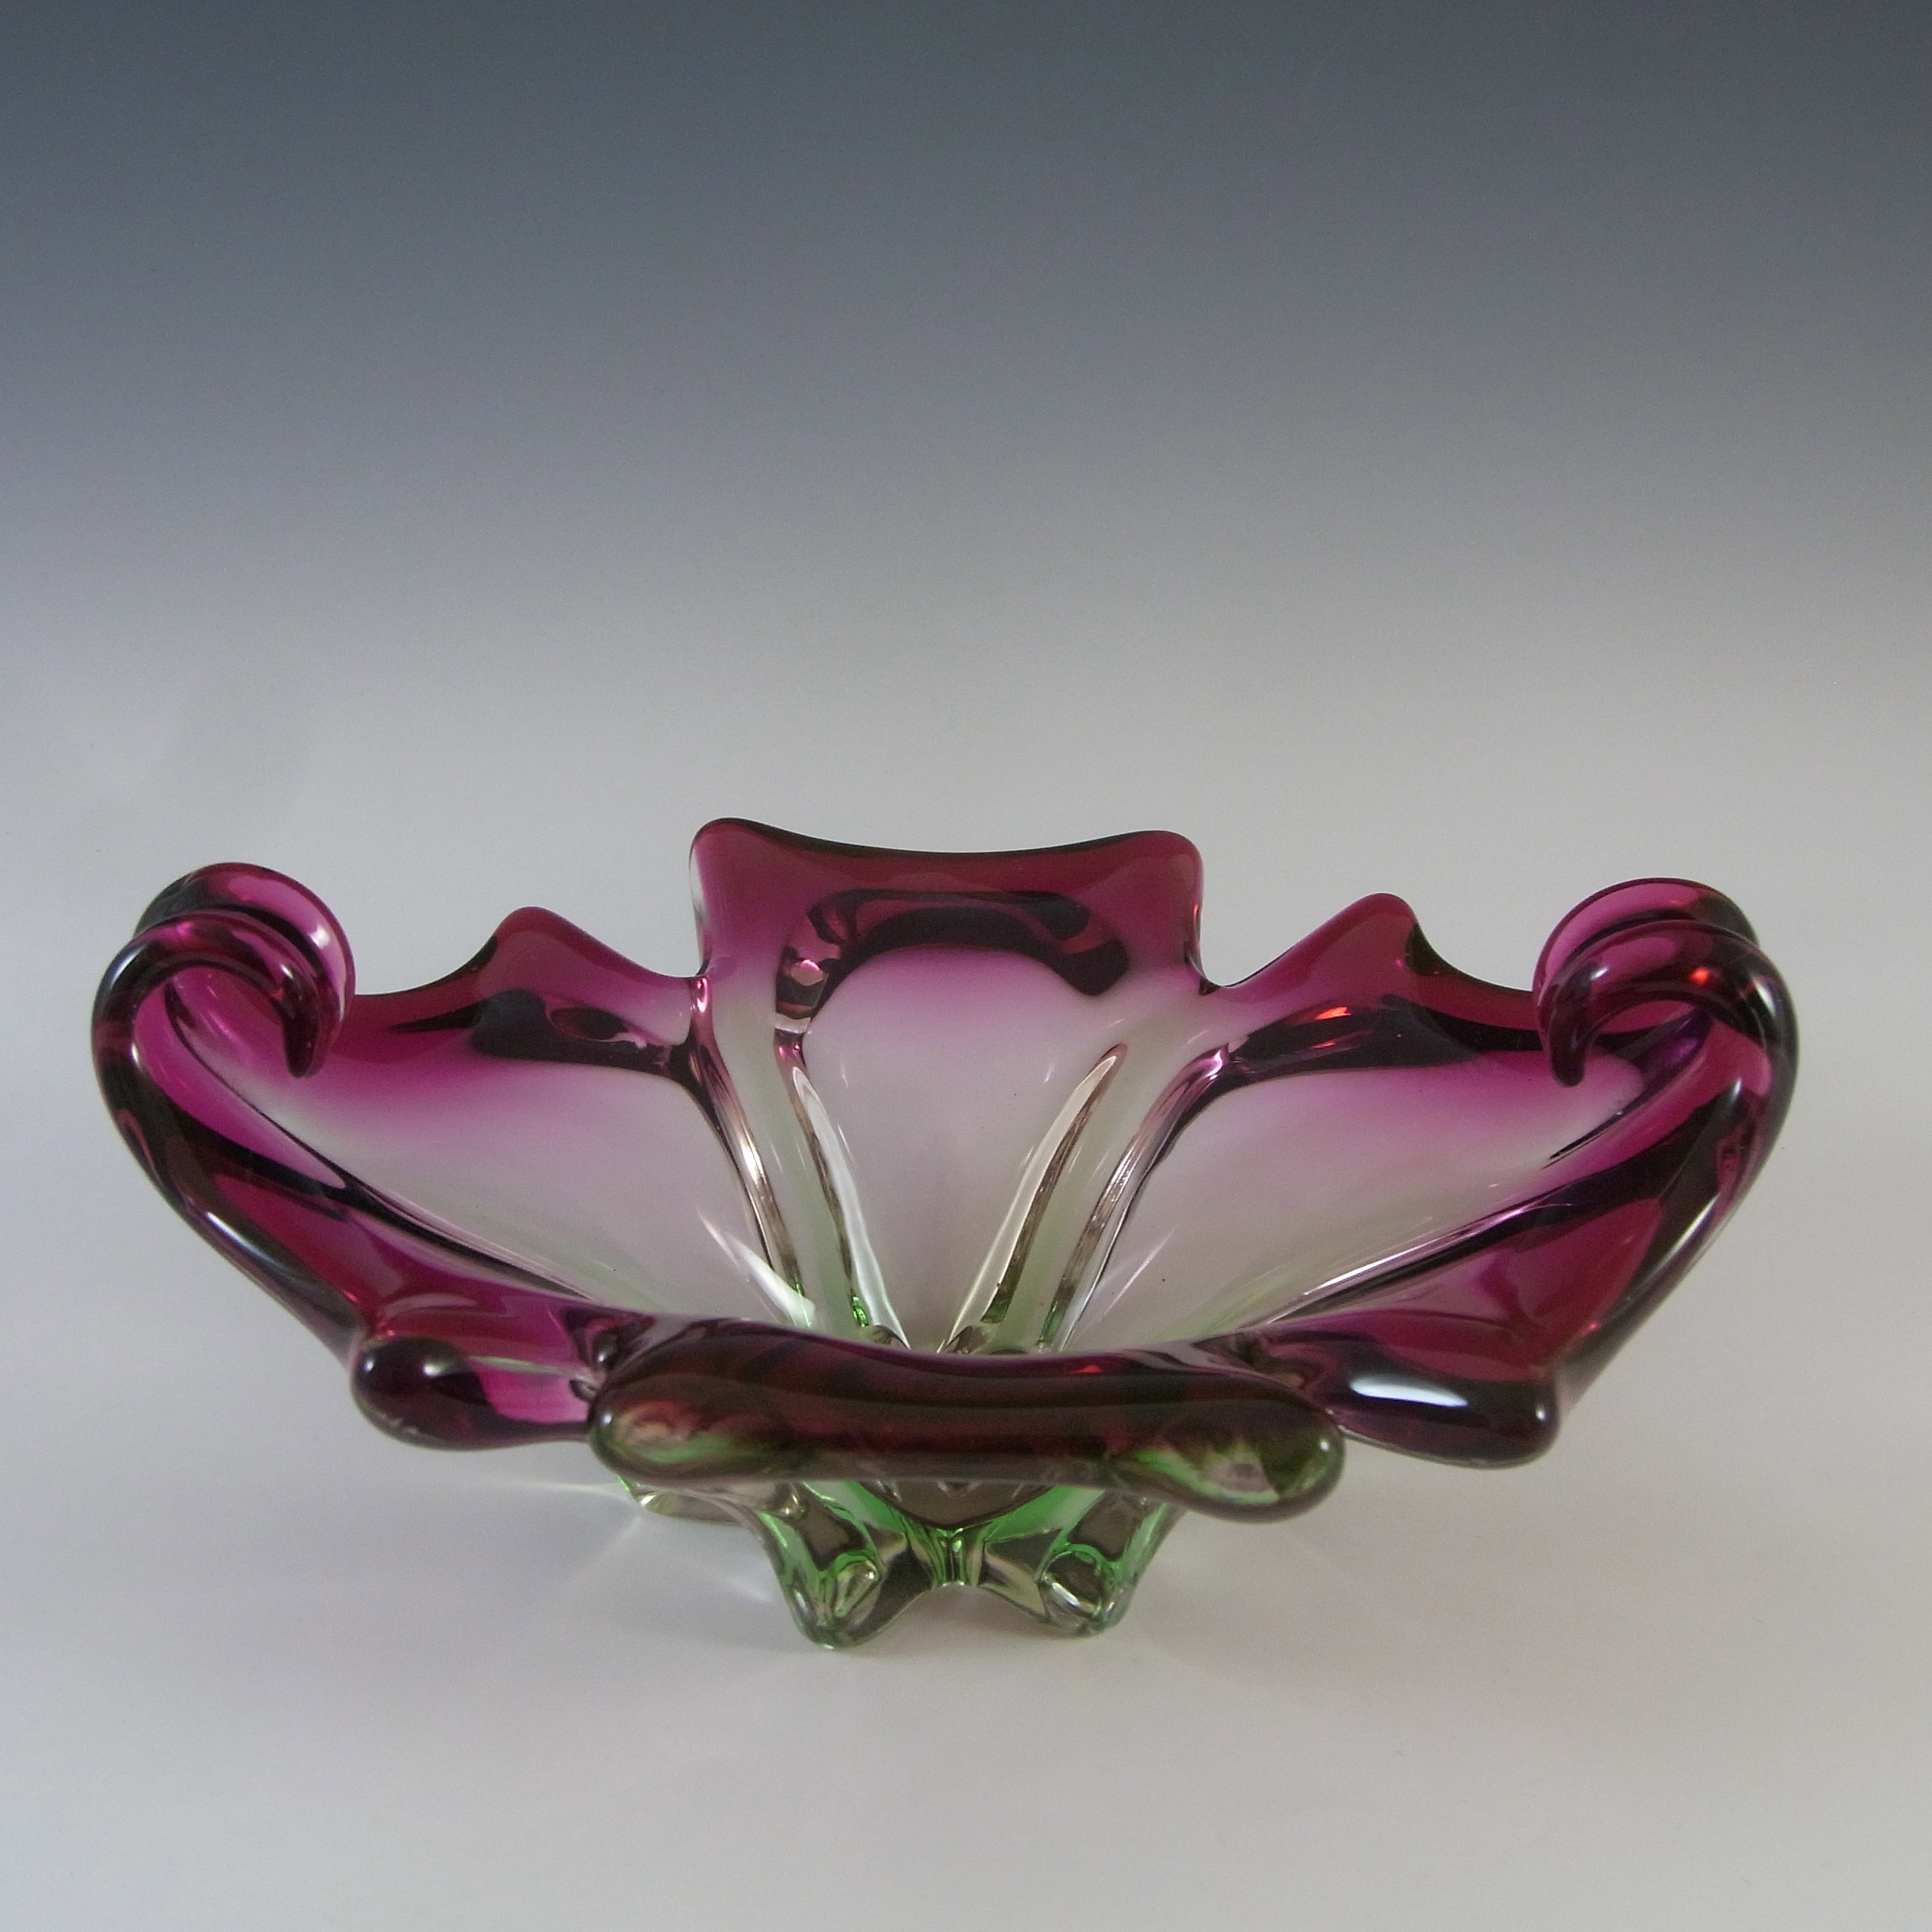 Cristallo Venezia CCC Murano Pink & Green Sommerso Glass Bowl - Click Image to Close